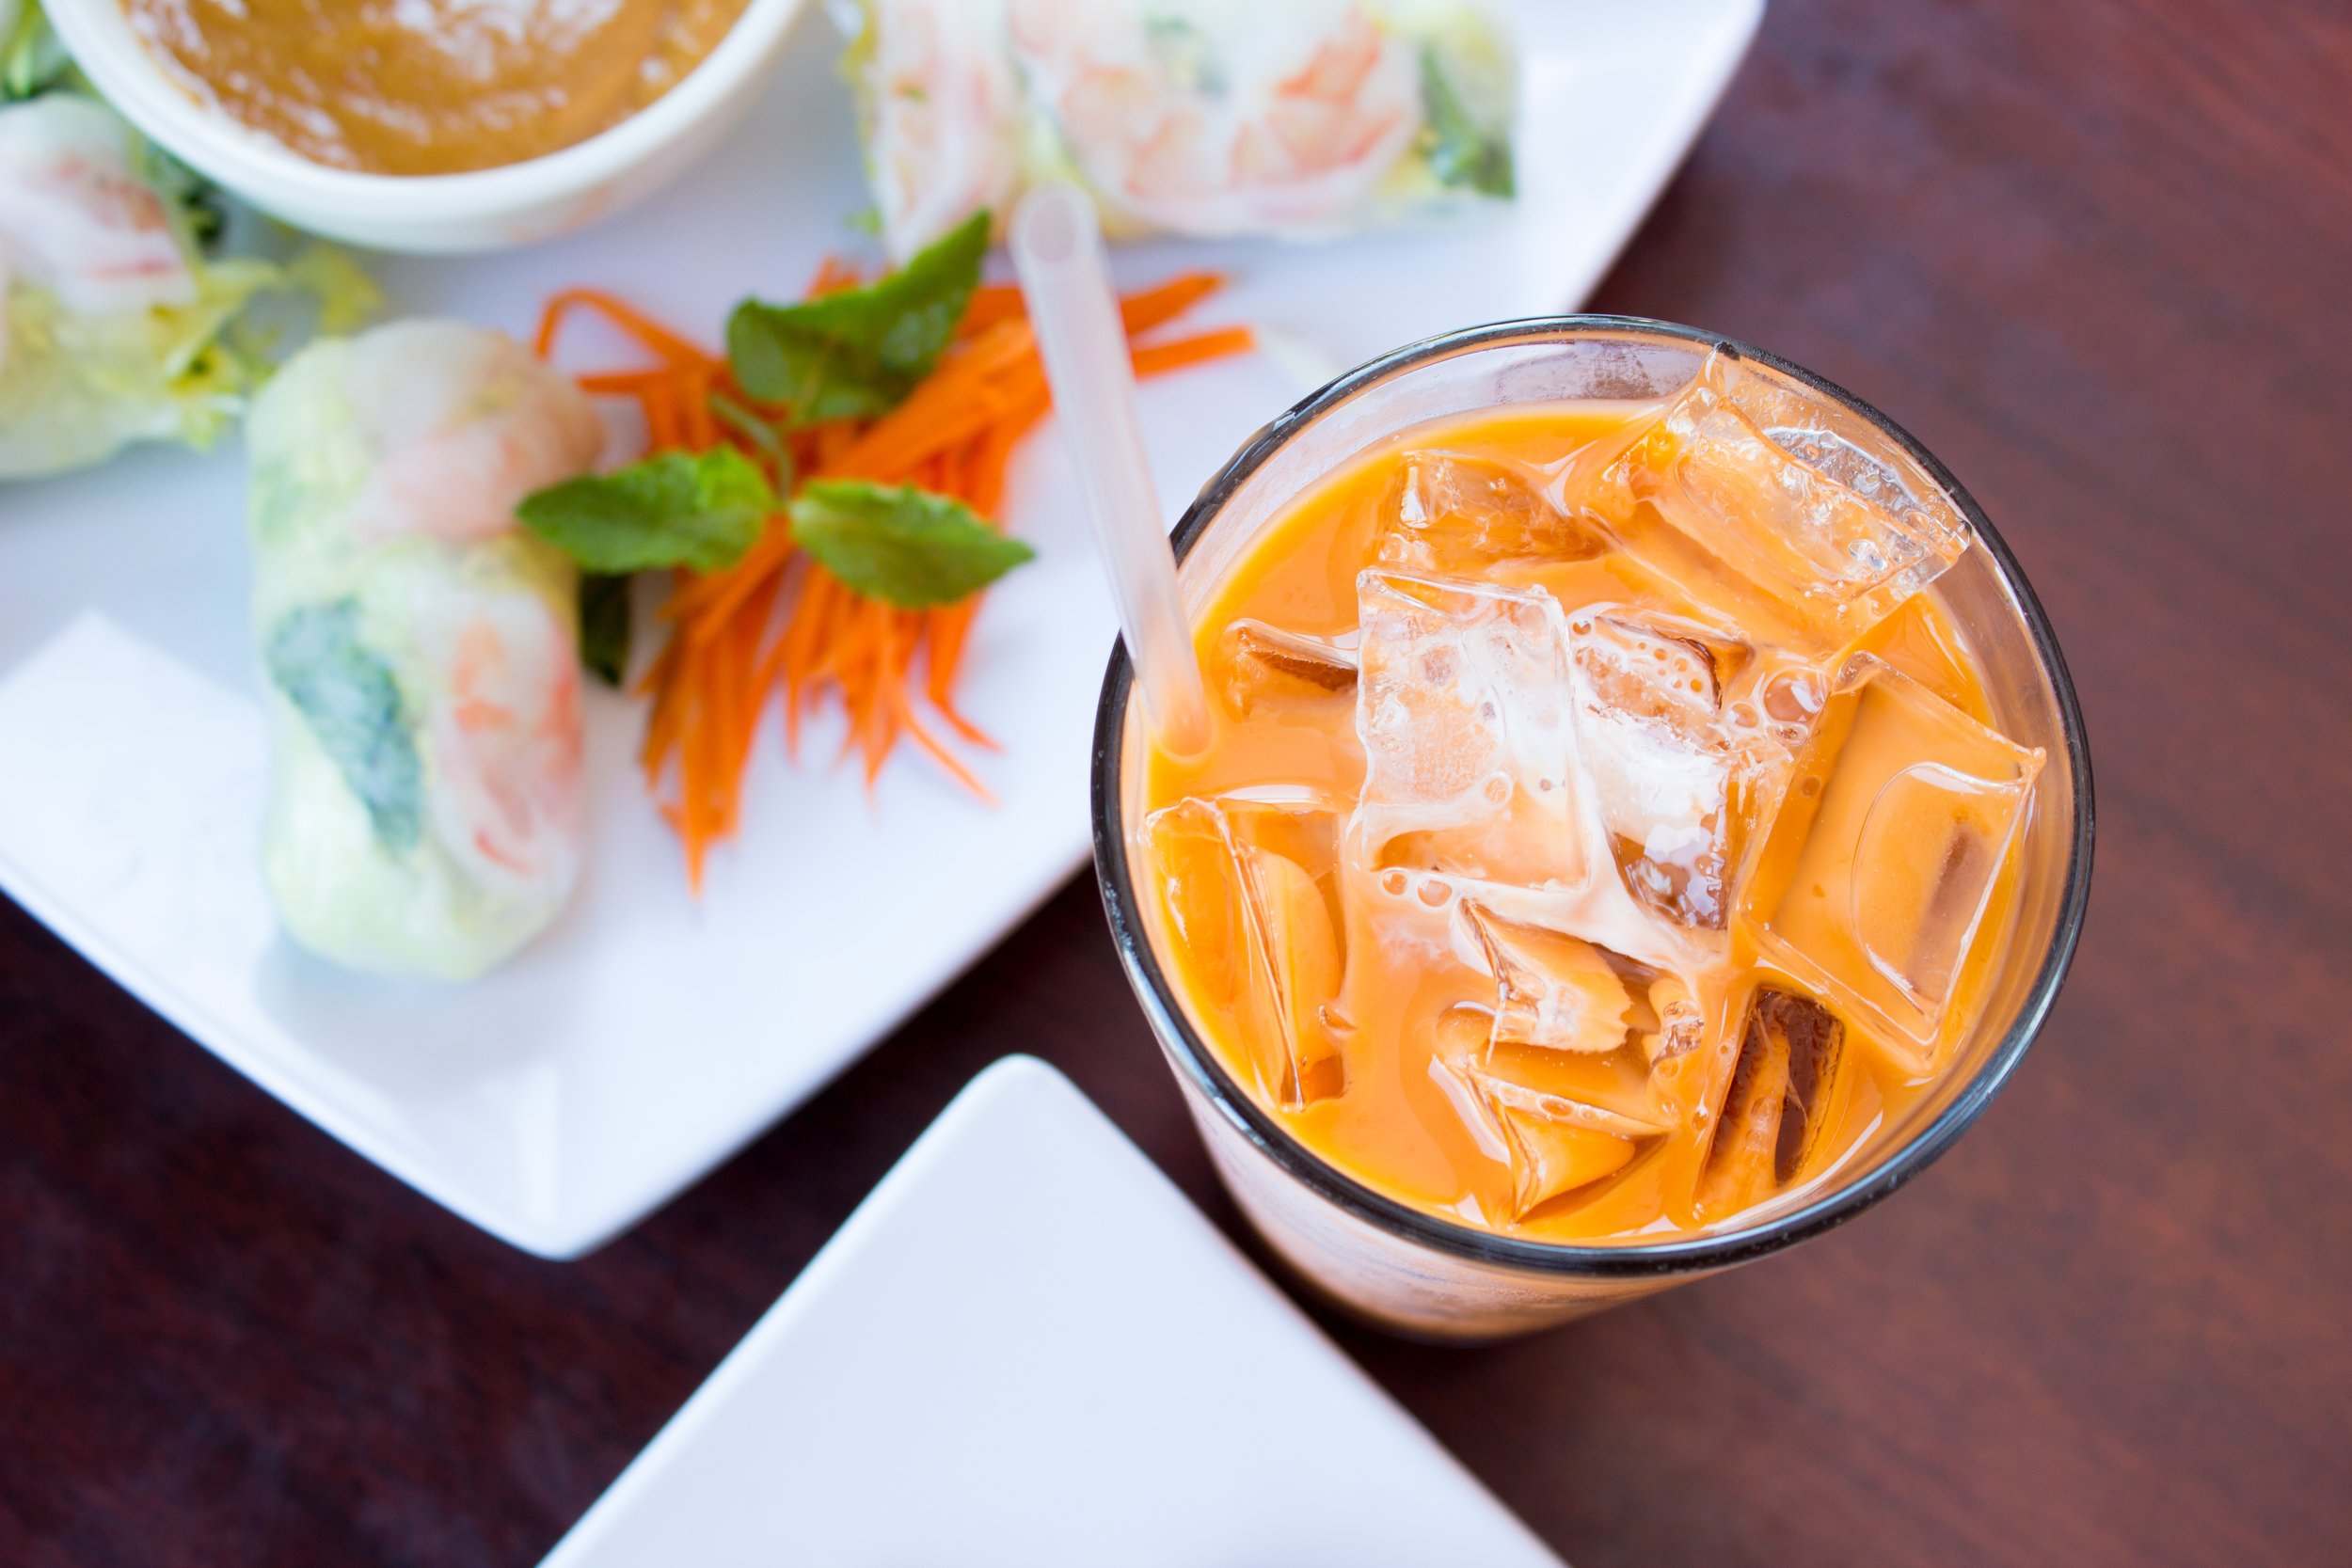 Thai Iced Tea and shrimp fresh rolls